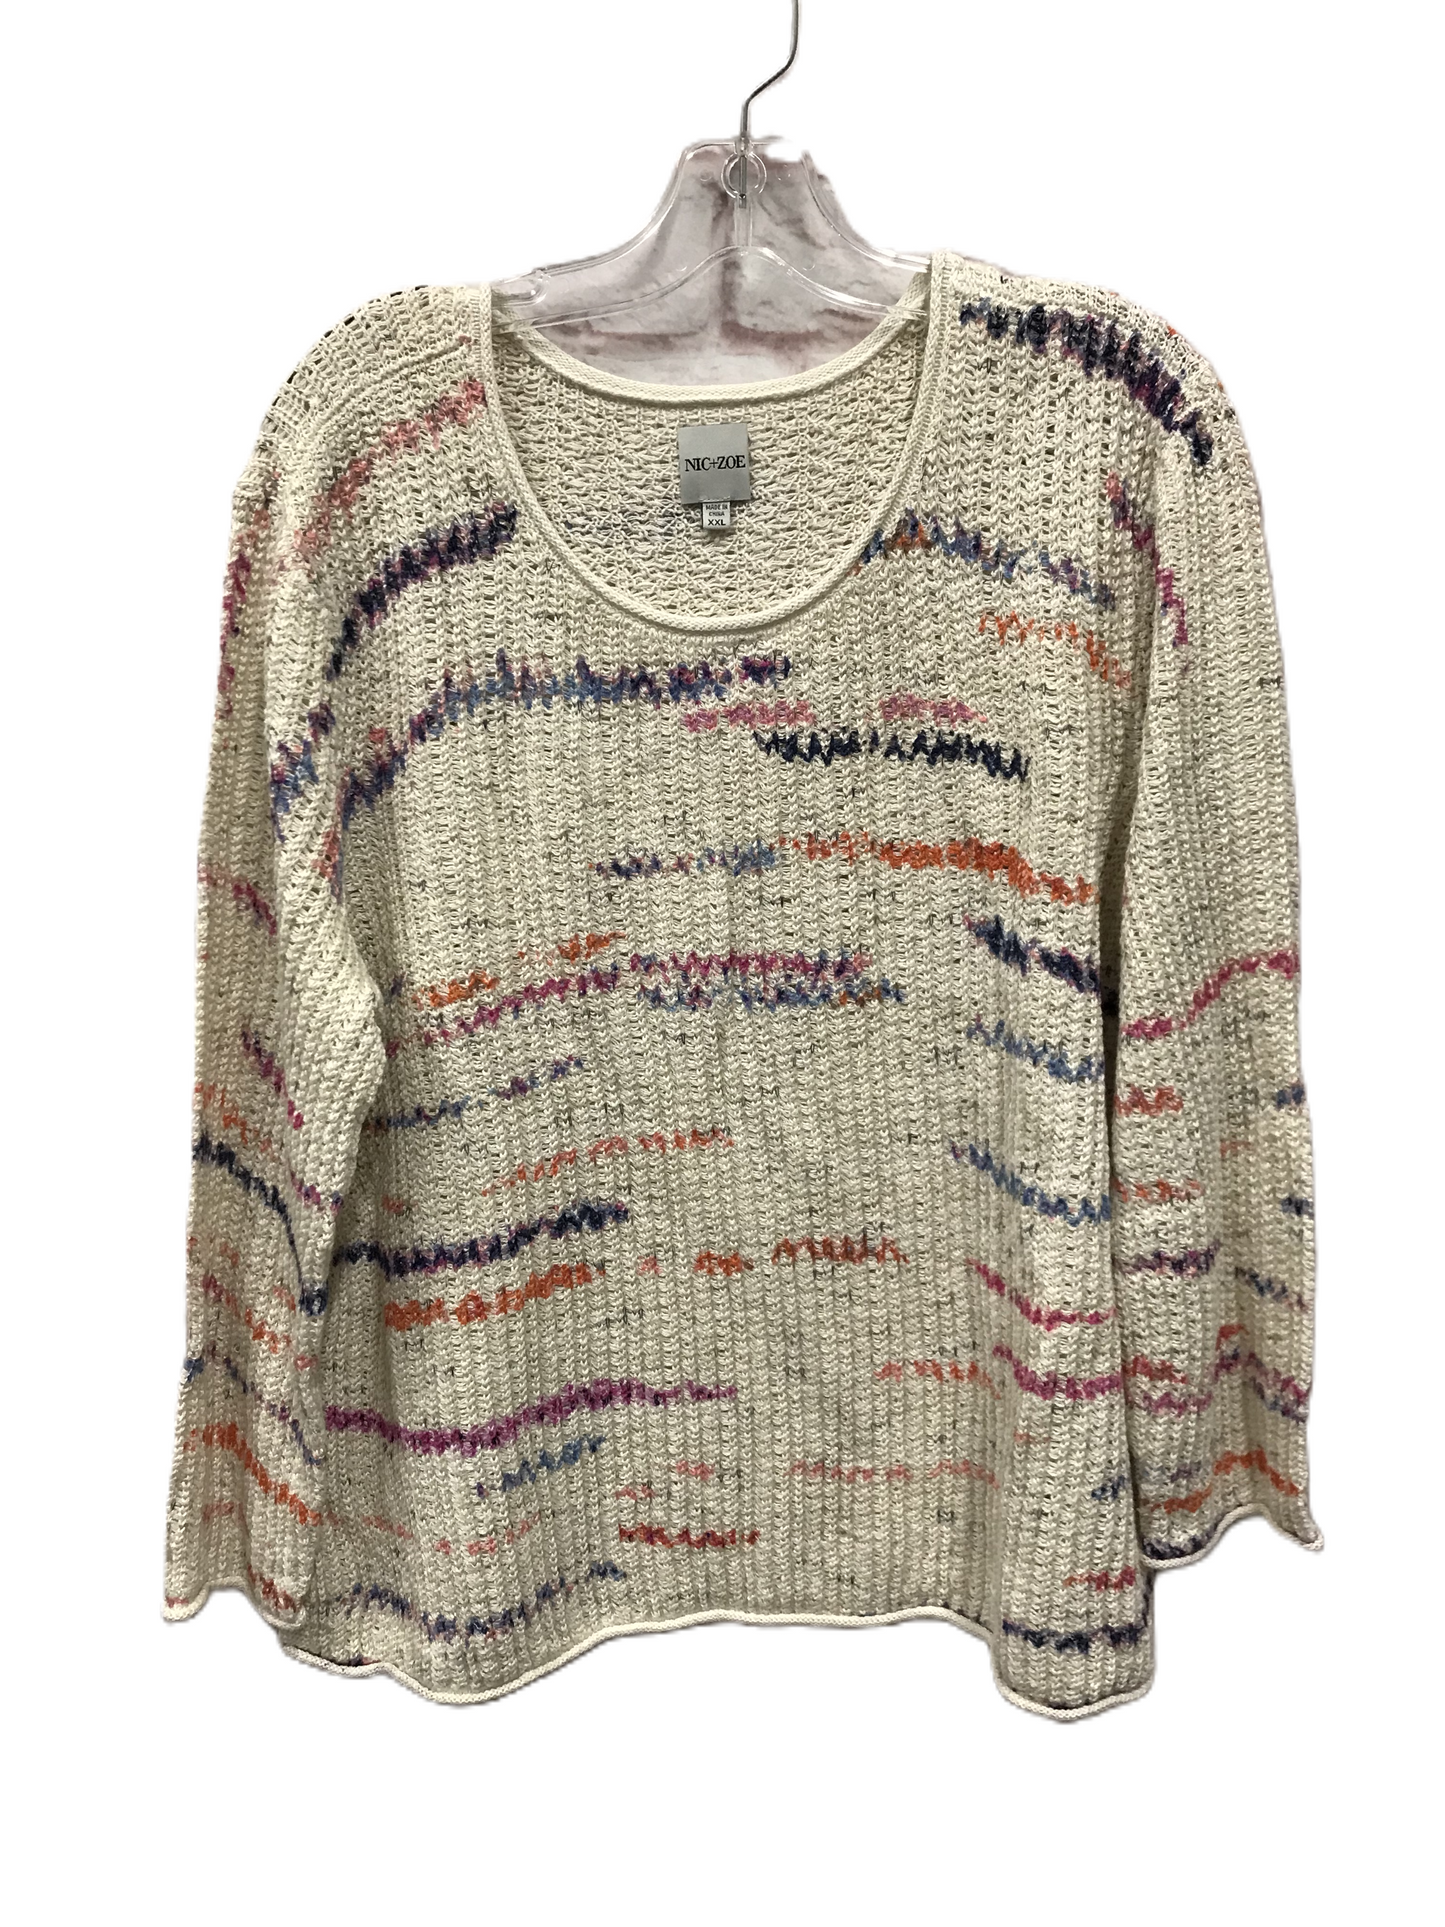 Tan Sweater By Nic + Zoe, Size: Xxl